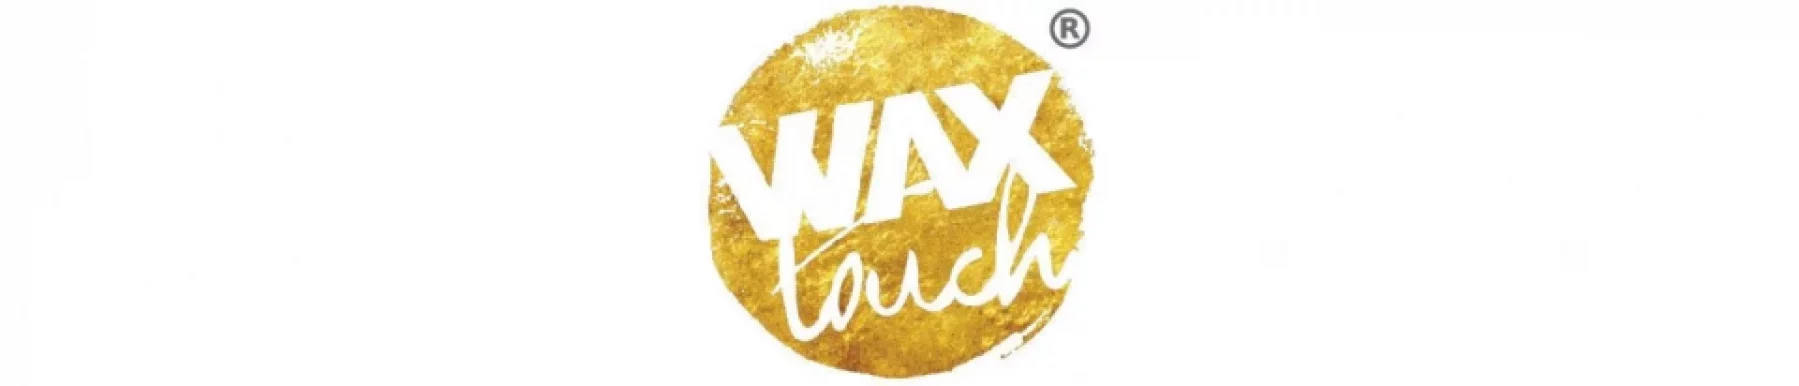 Wax Touch, HSR, Bangalore - Photo 1